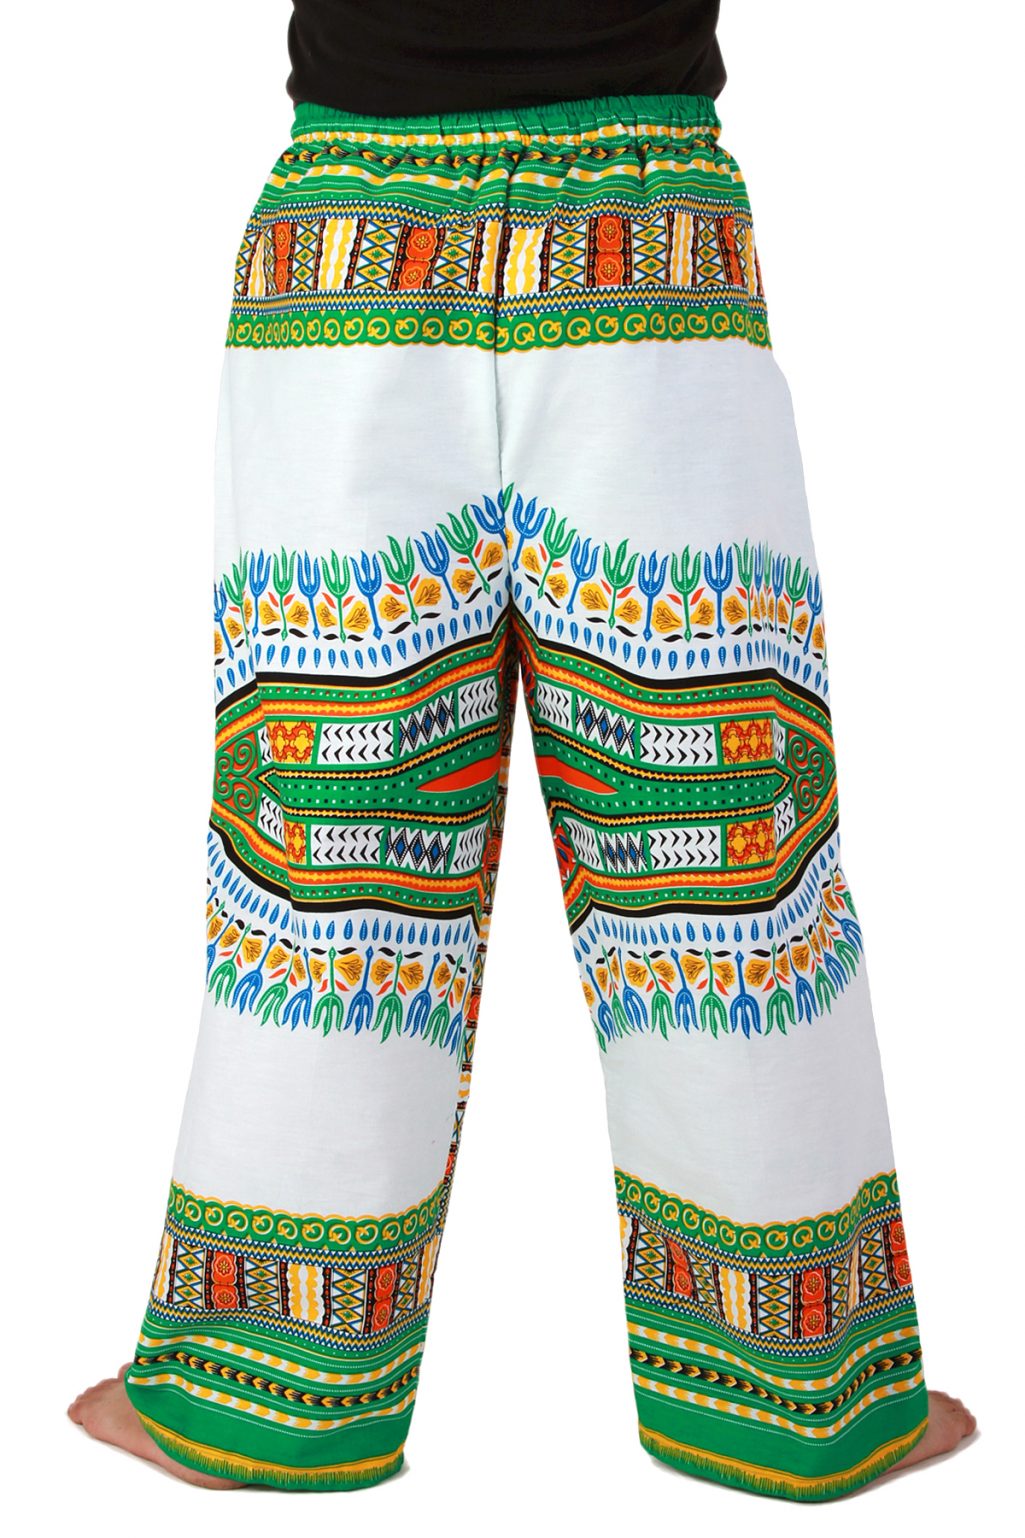 women's dashiki skirt for sale